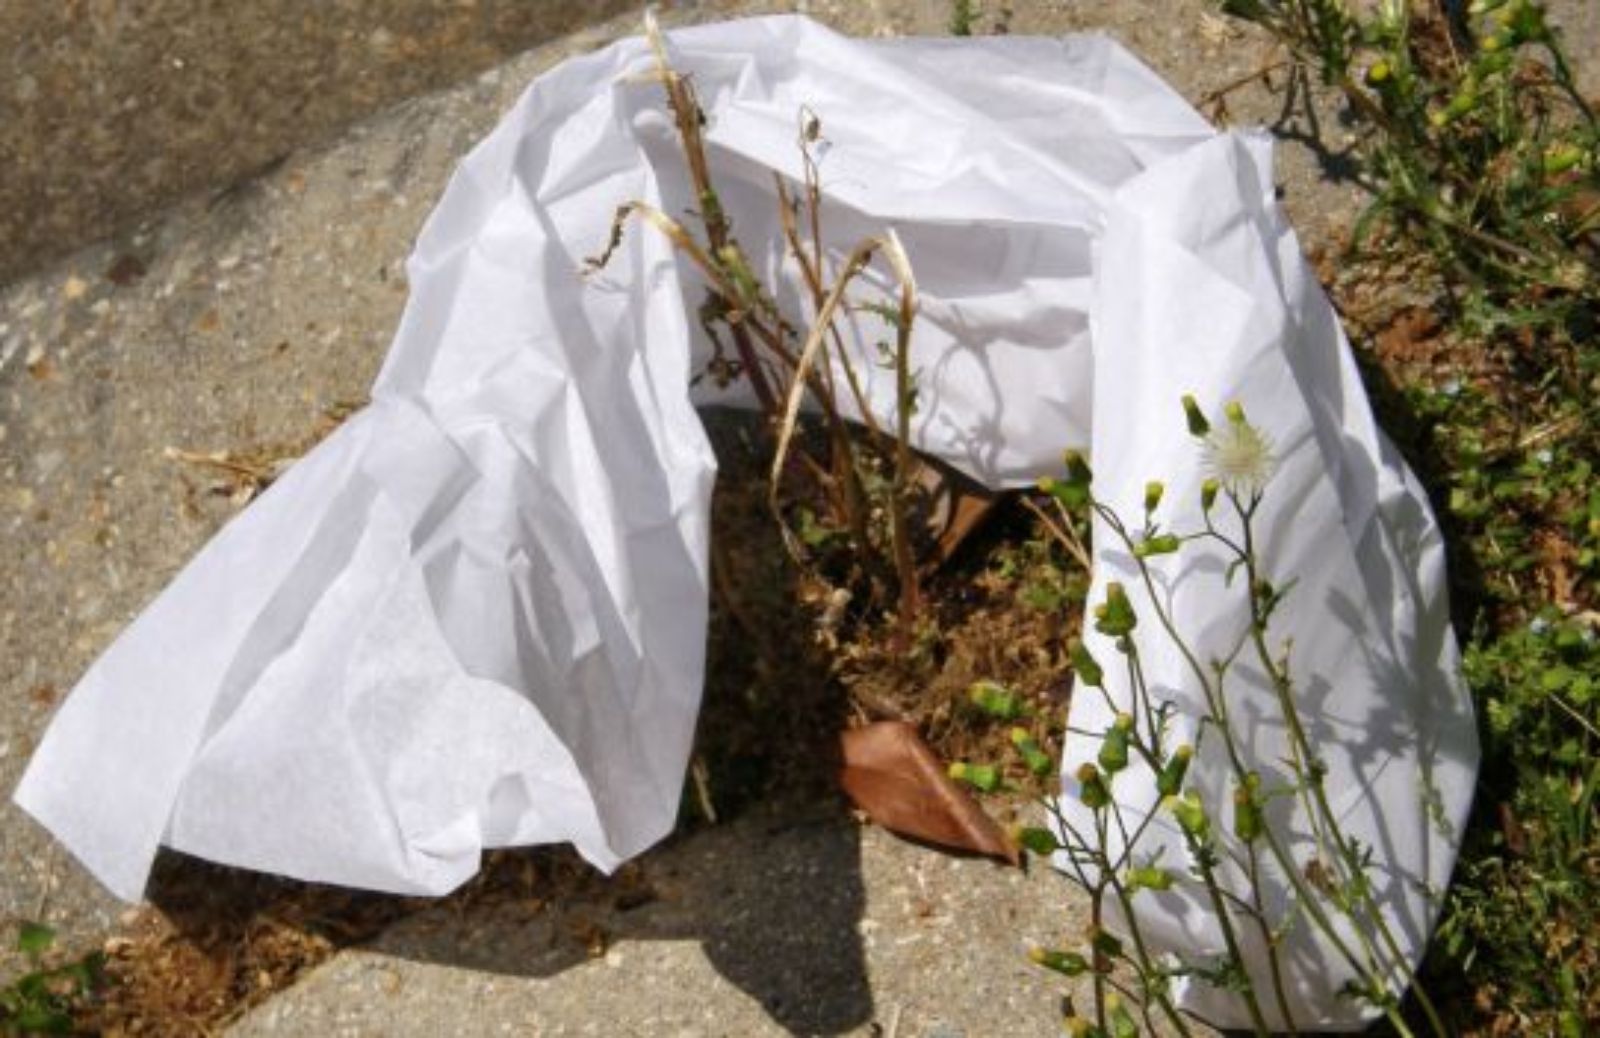 Come ha influito l'abolizione delle borse di plastica sull'ambiente